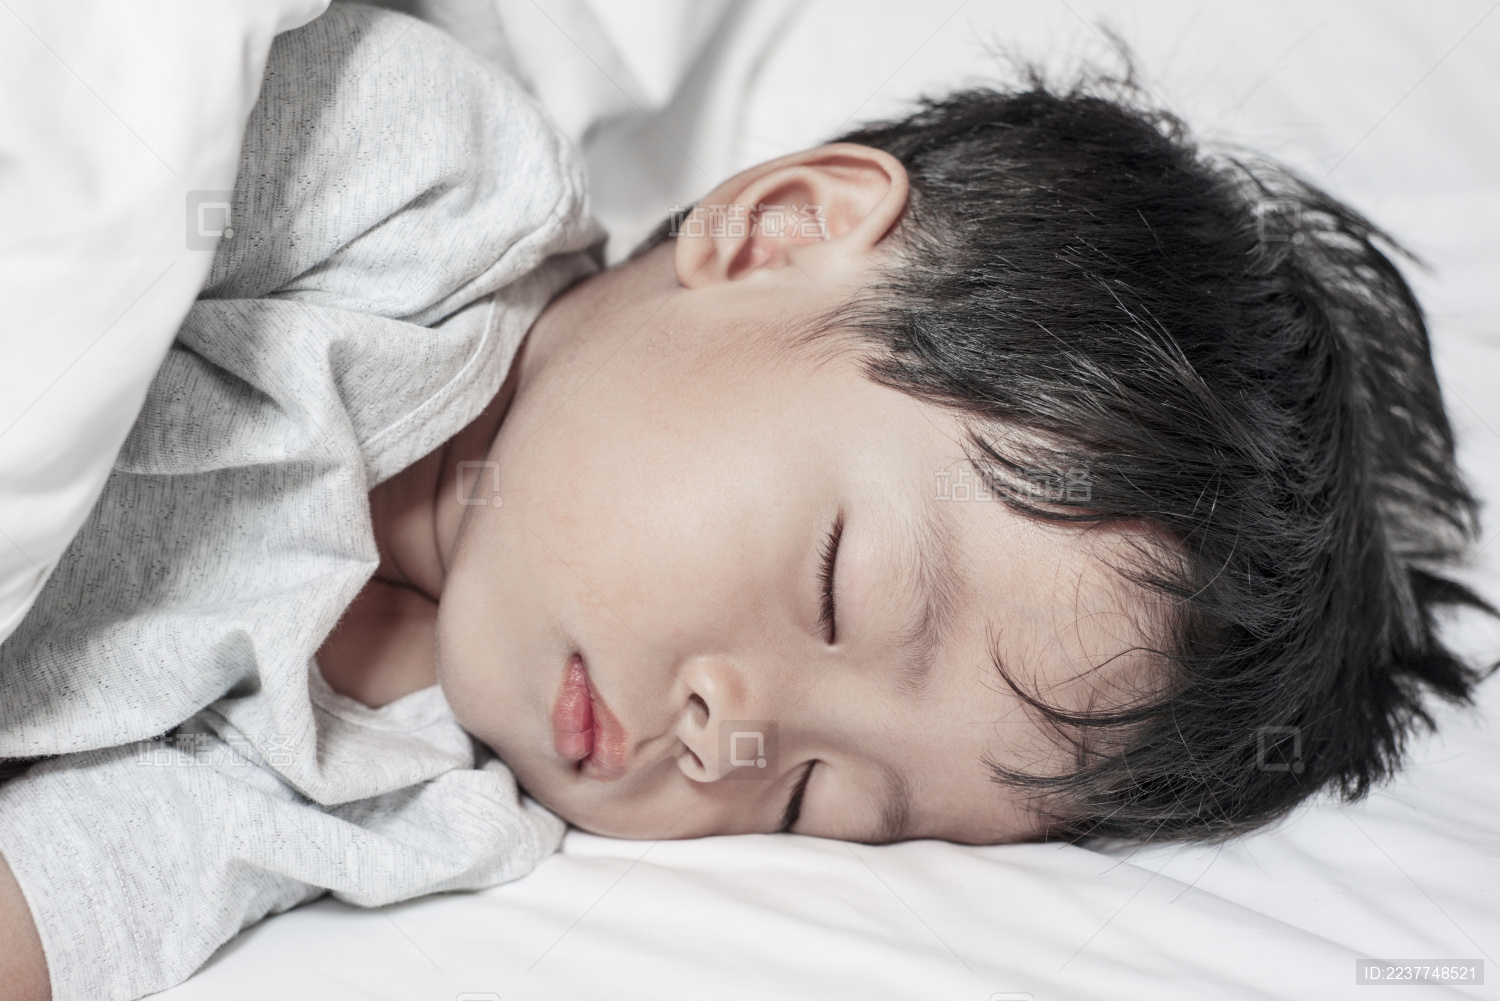 熟睡的宝宝婴儿素材图片壁纸_高清熟睡的婴儿图片壁纸_三千图片网